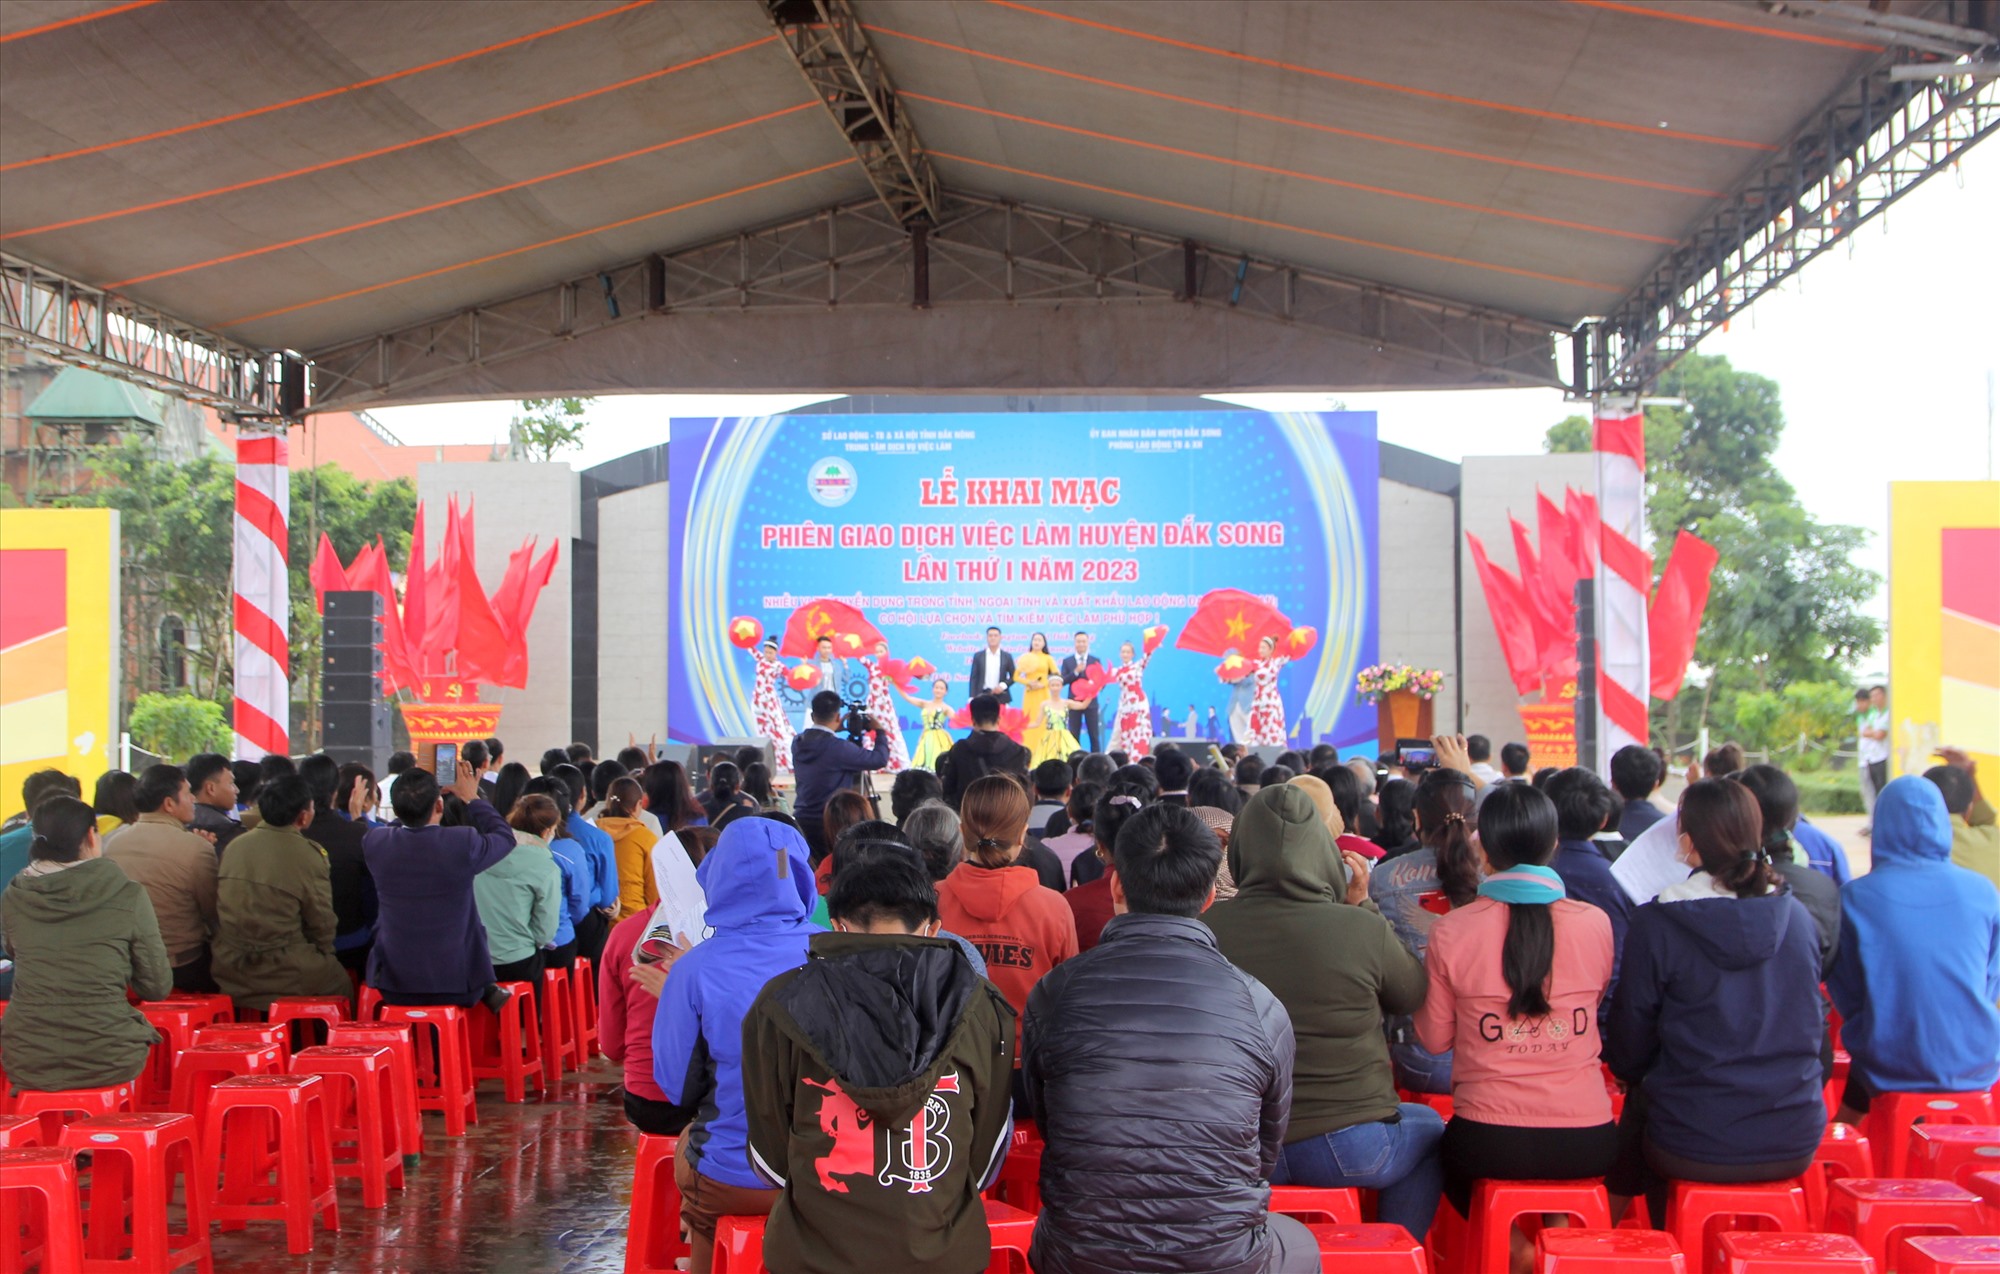 Có khoảng 500 người dân ở huyện Đắk Song tham gia Phiên giao dịch việc làm. Ảnh: Phan Tuấn